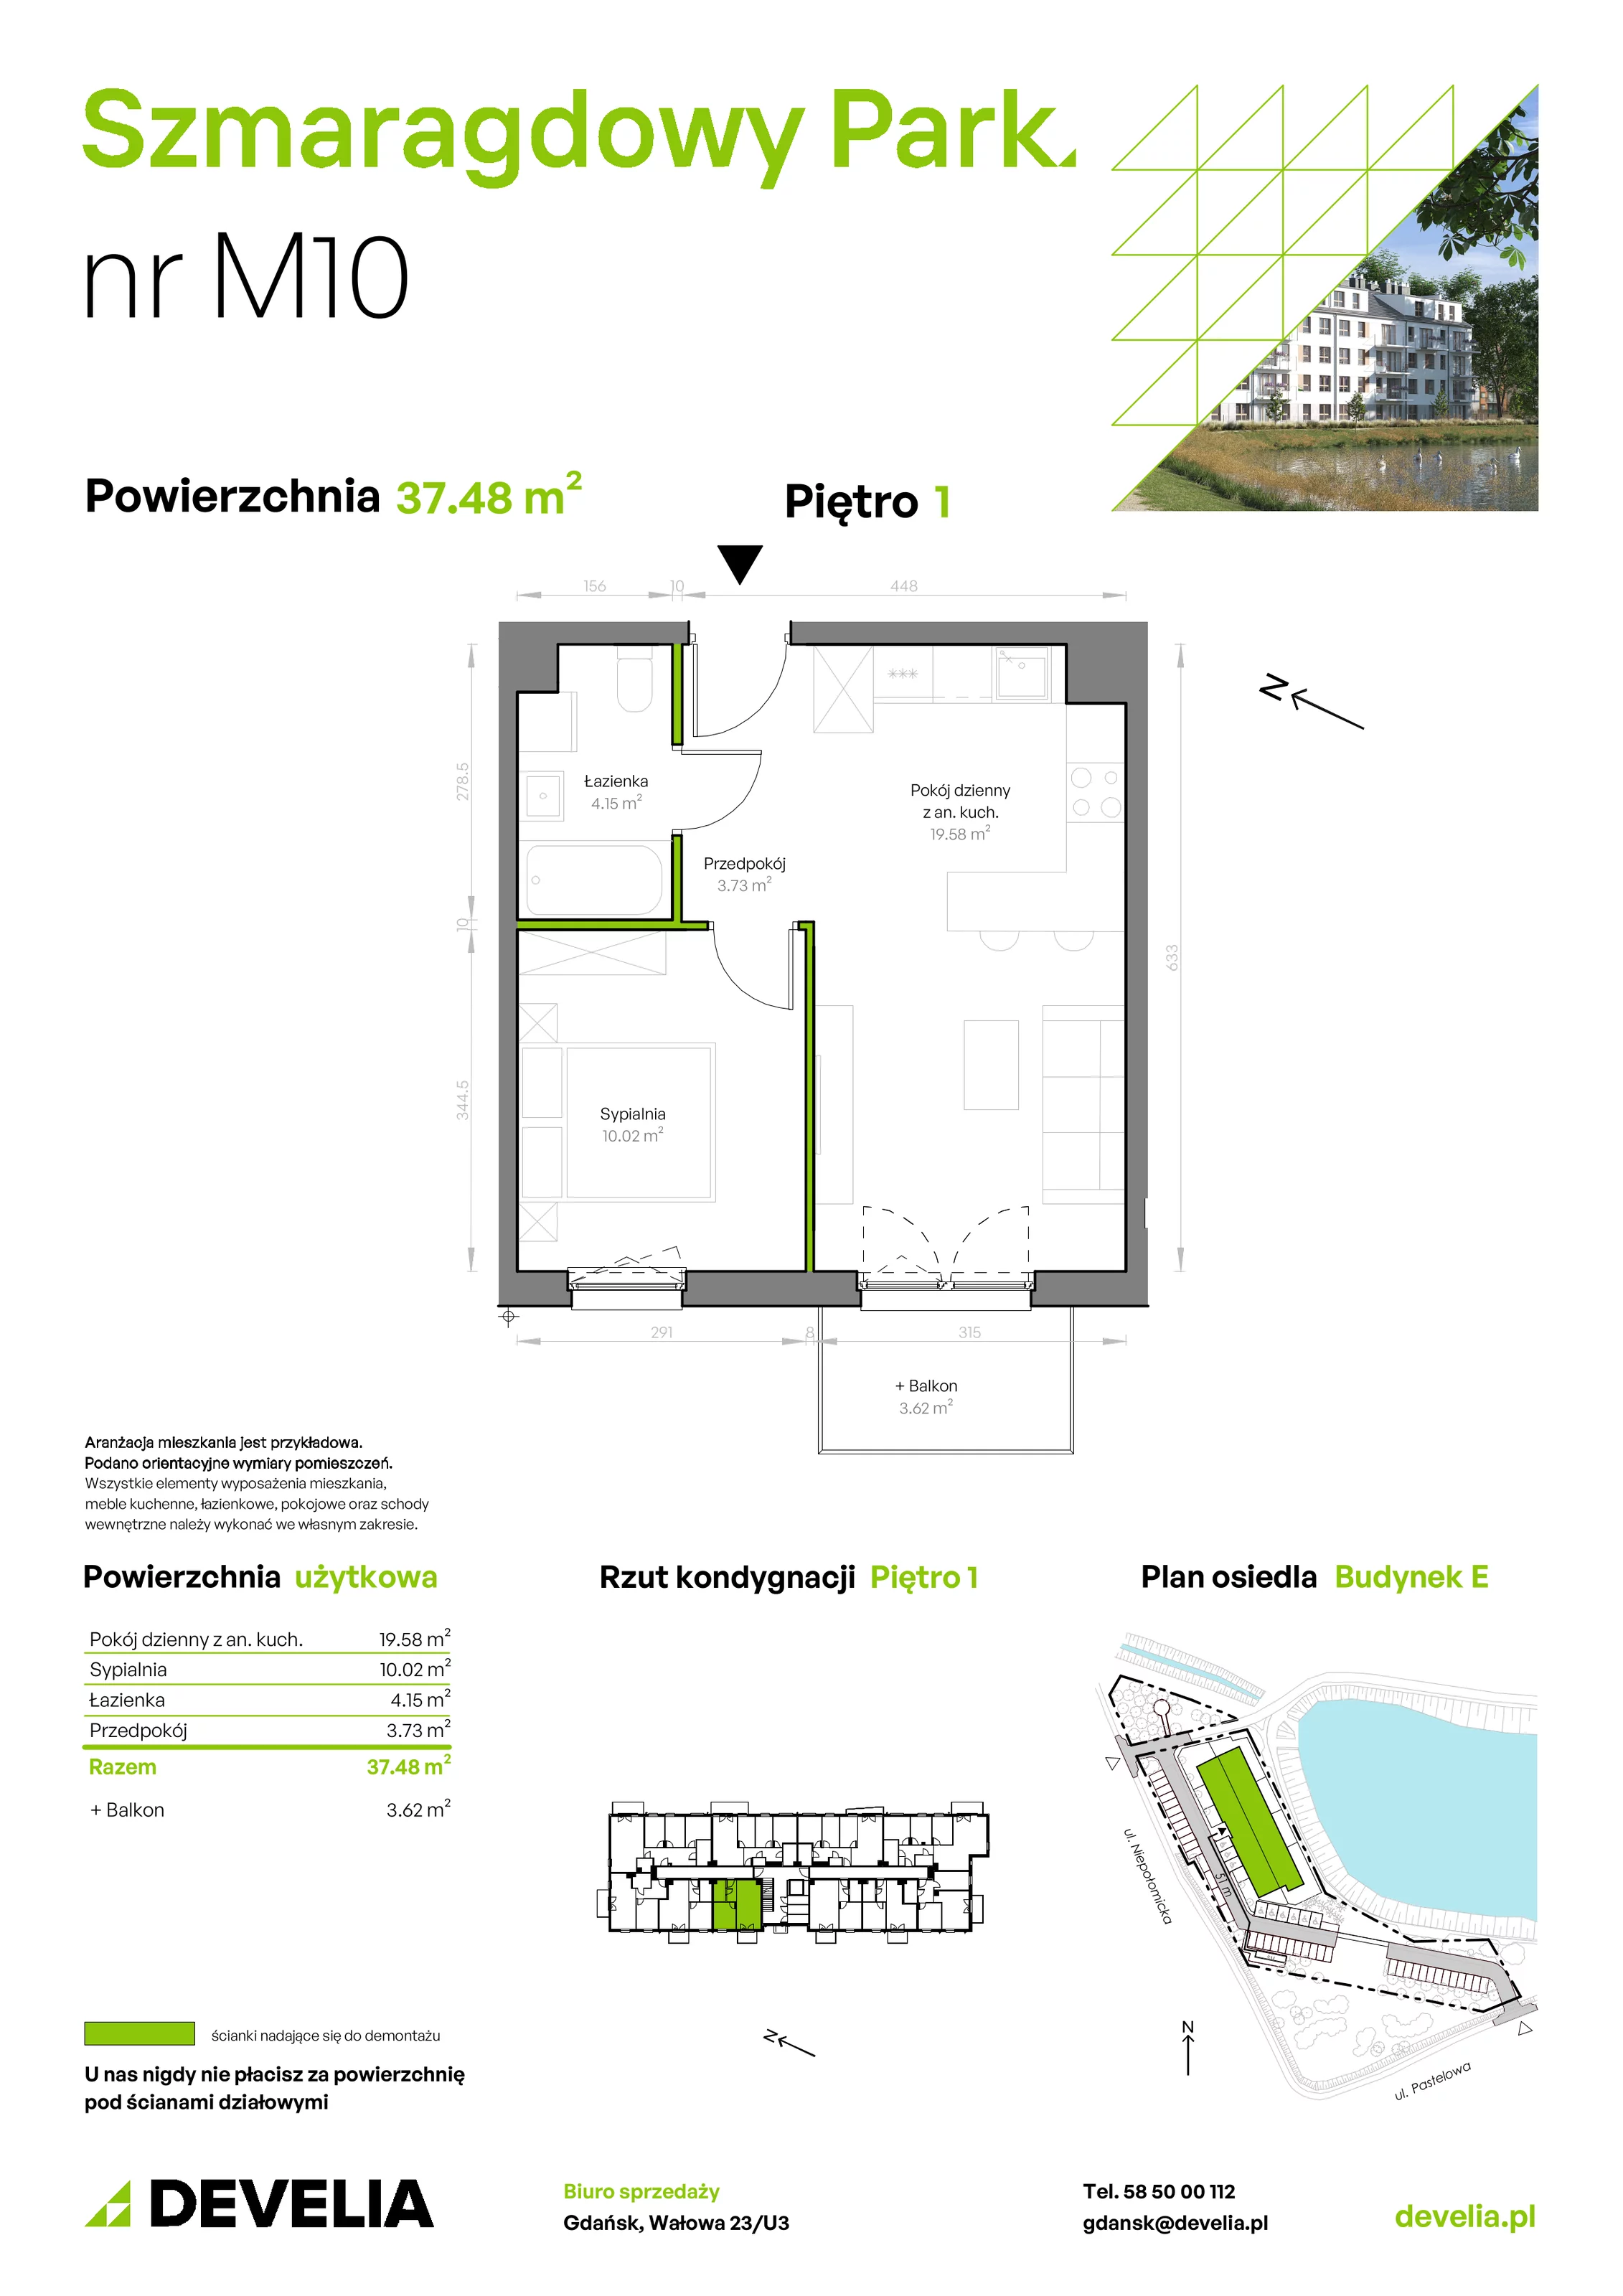 Mieszkanie 37,48 m², piętro 1, oferta nr E/010, Szmaragdowy Park, Gdańsk, Orunia Górna-Gdańsk Południe, Łostowice, ul. Topazowa 2